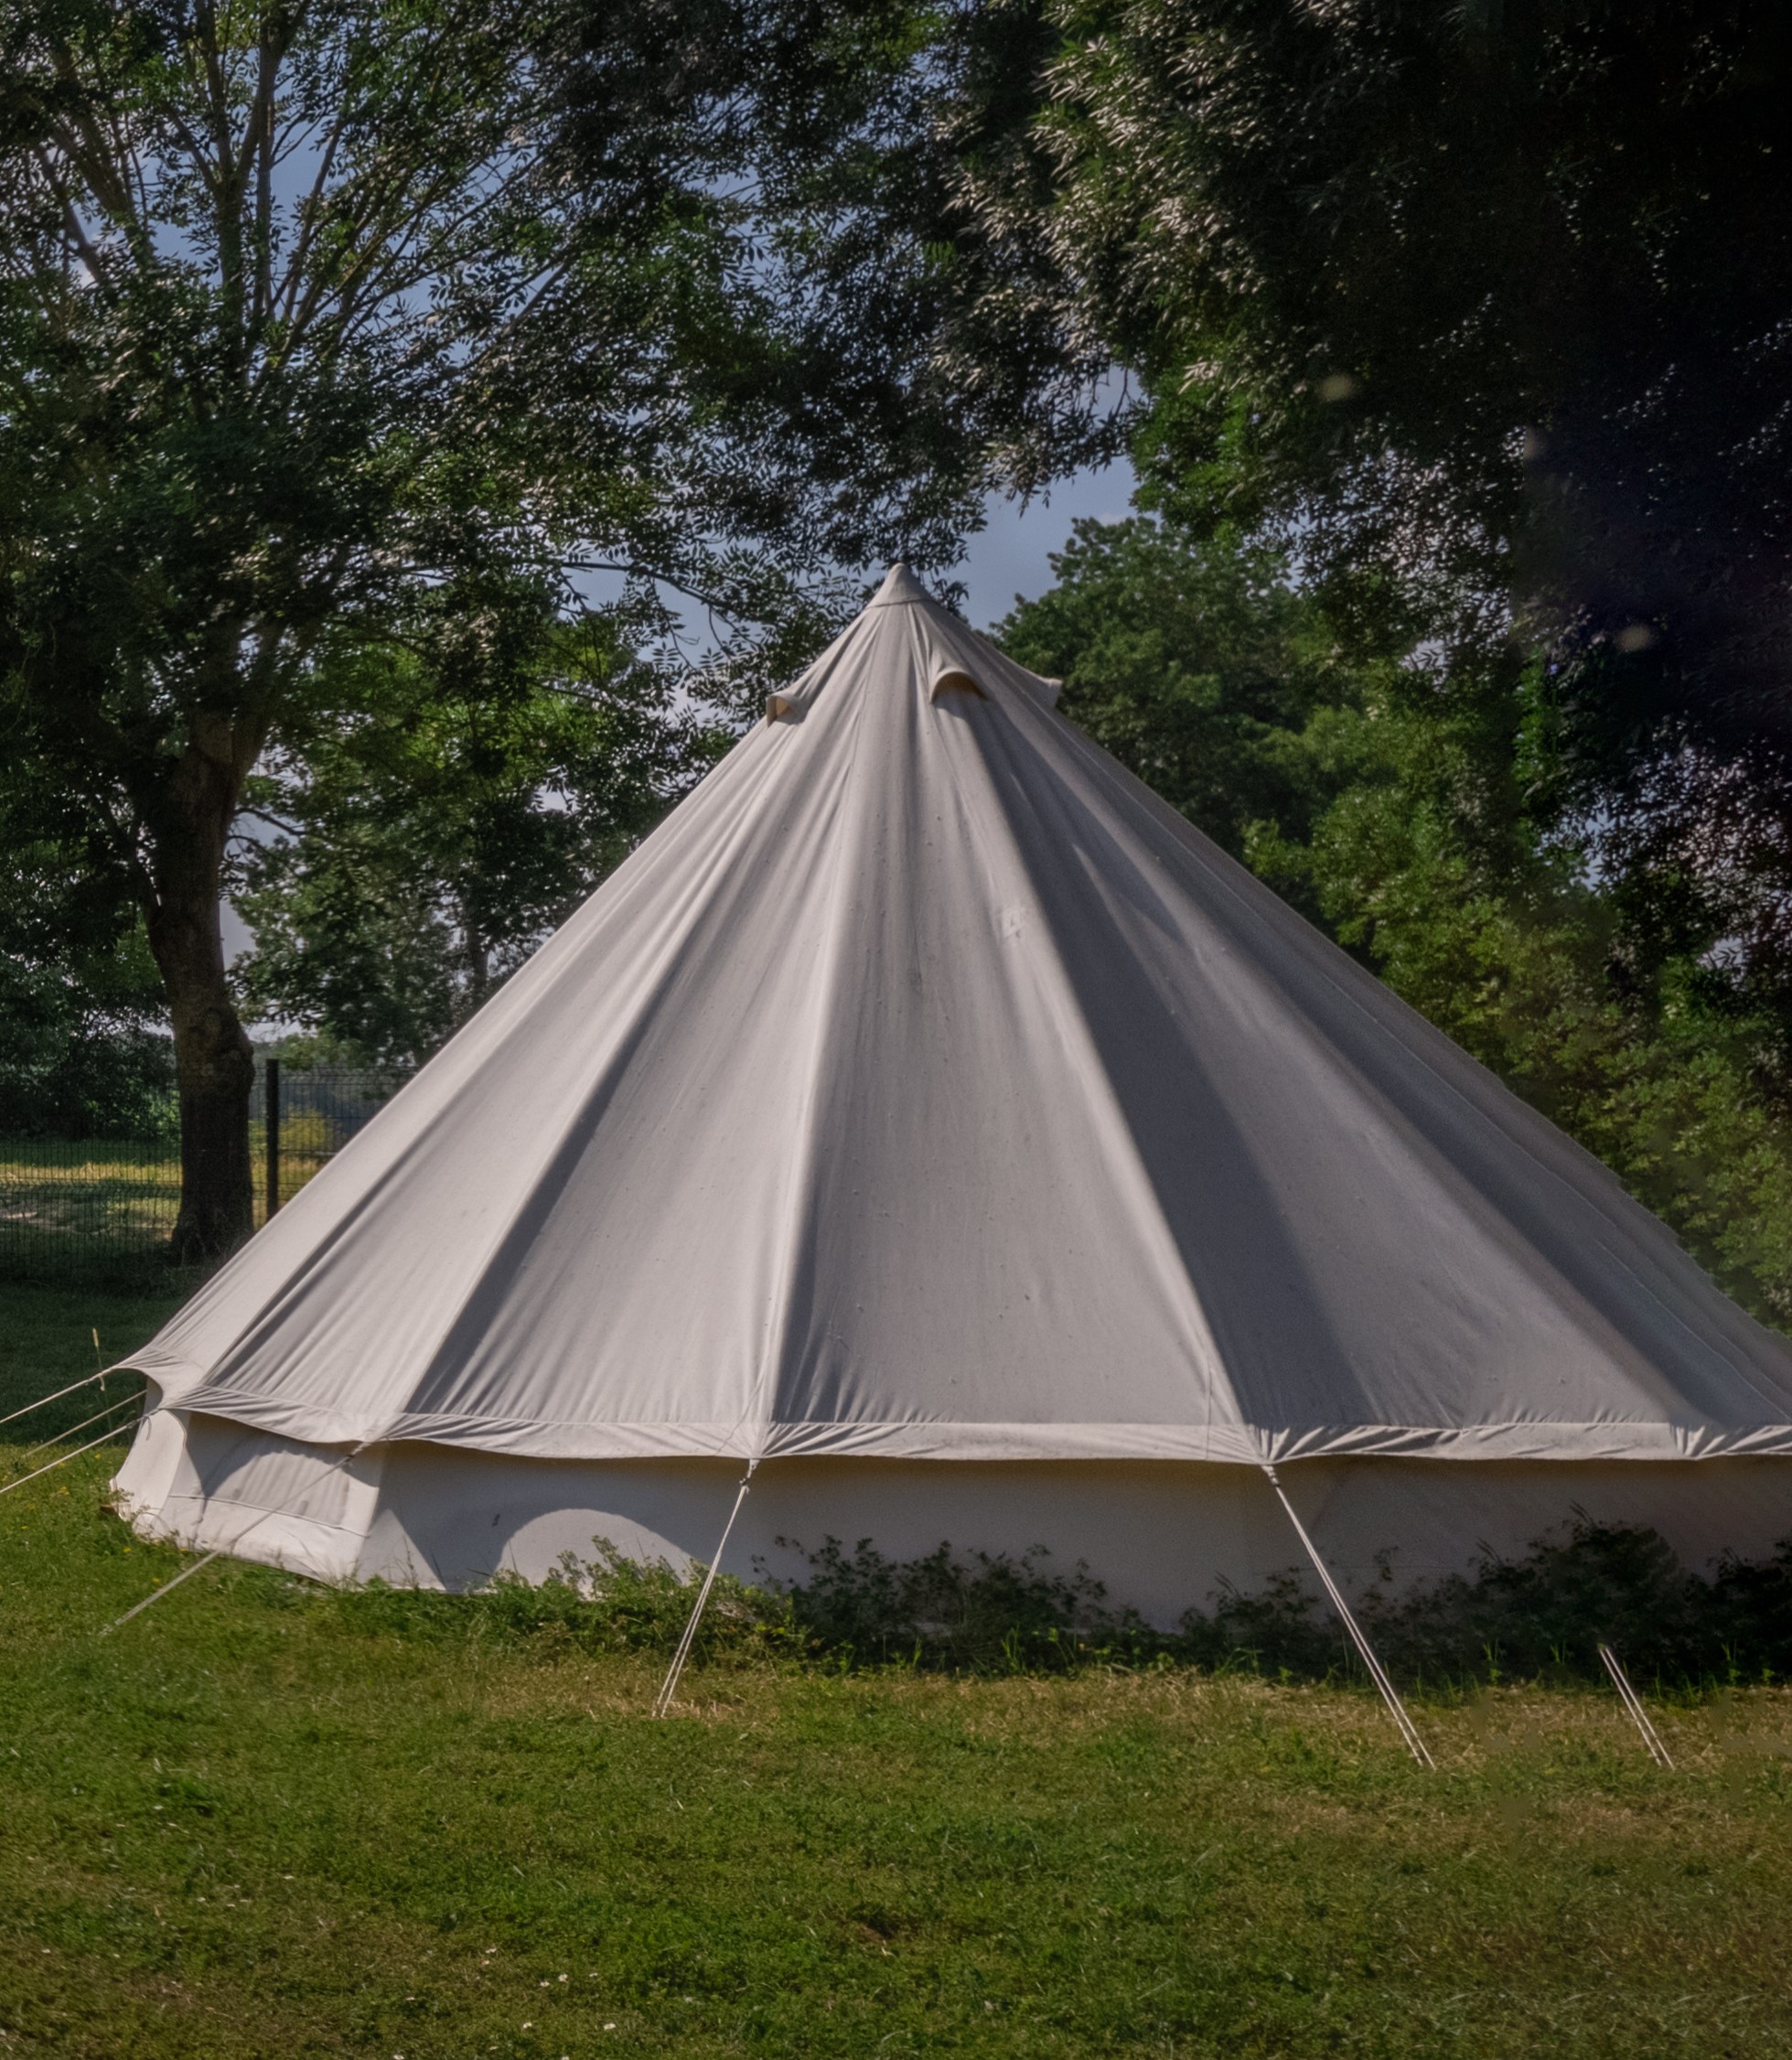 Octagonal tent